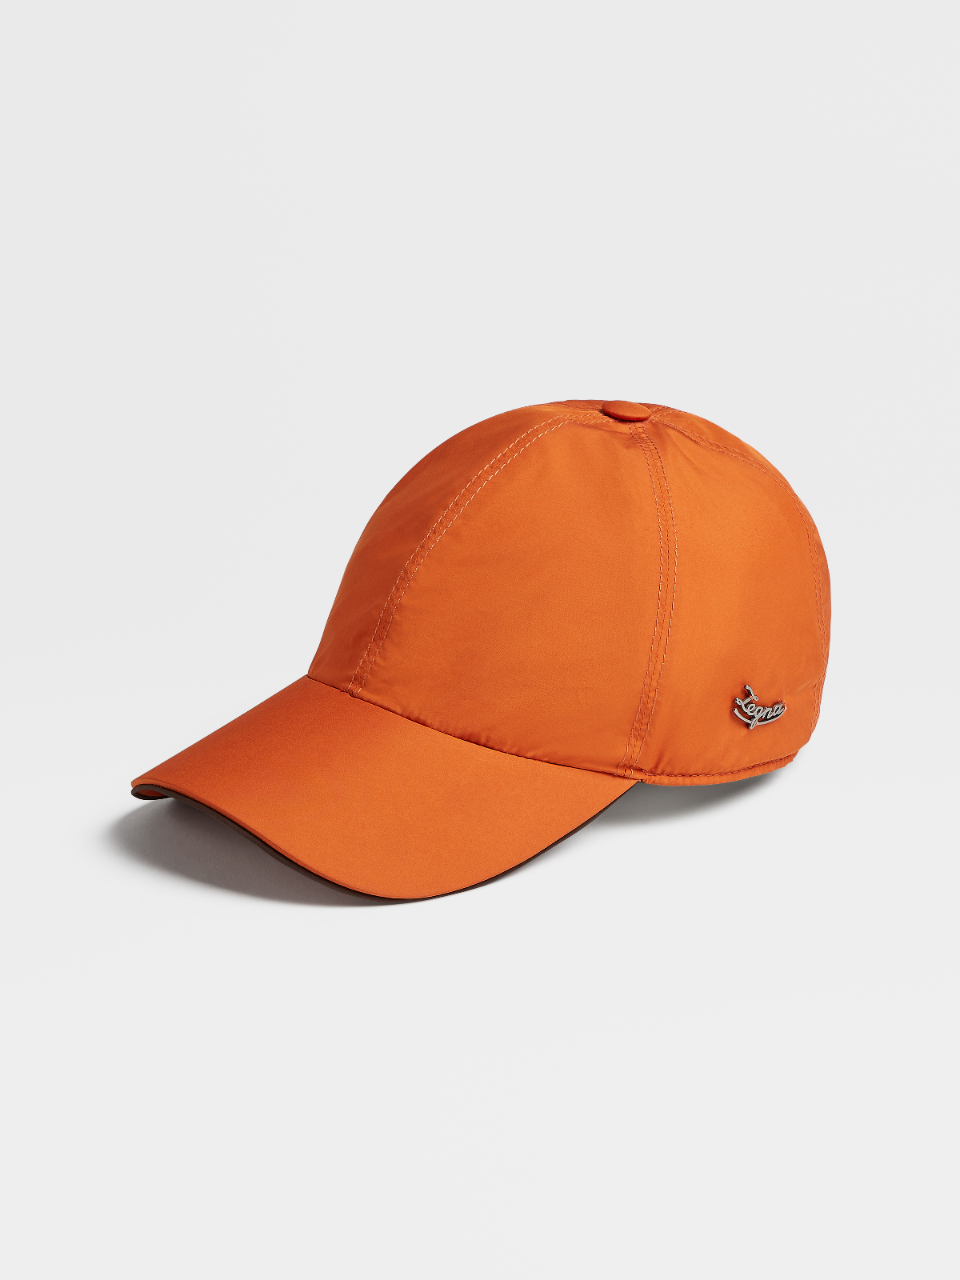 Orange Breeze Breaker Baseball Cap